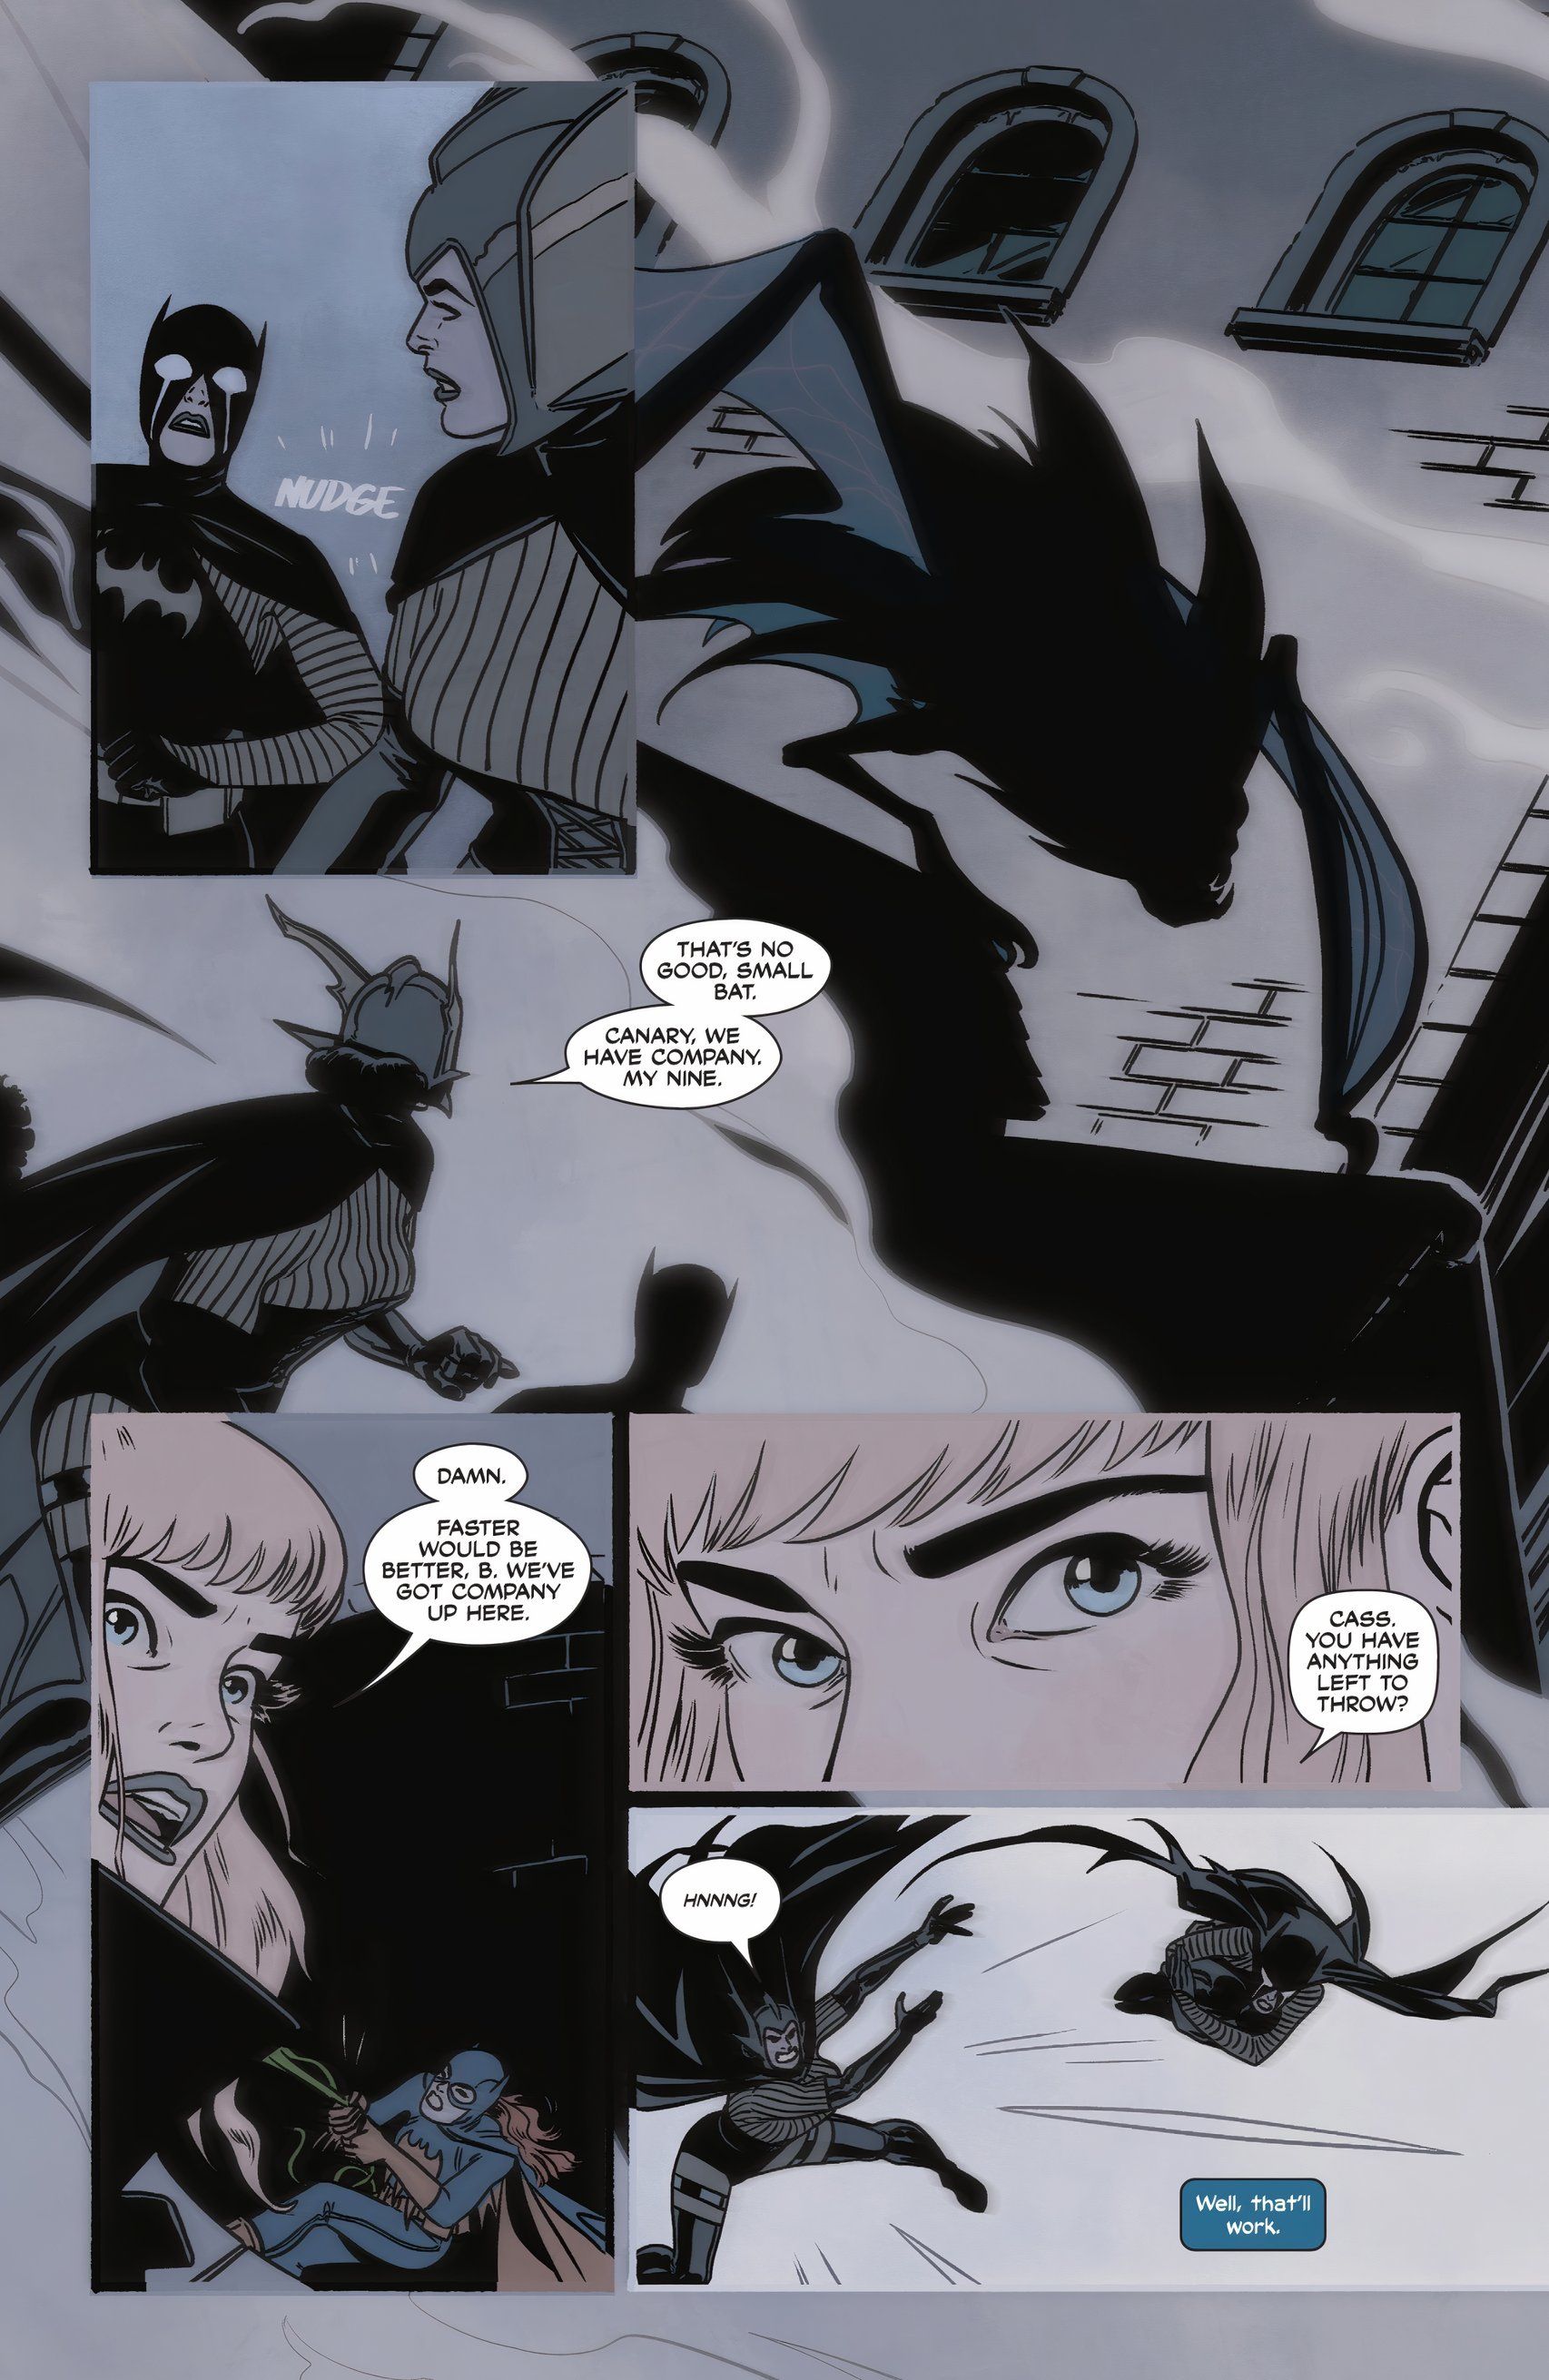 Big Barda joga Cassandra Cain em um morcego gigante, recriando o filme da Marvel "Especial Bola Rápida" técnica.